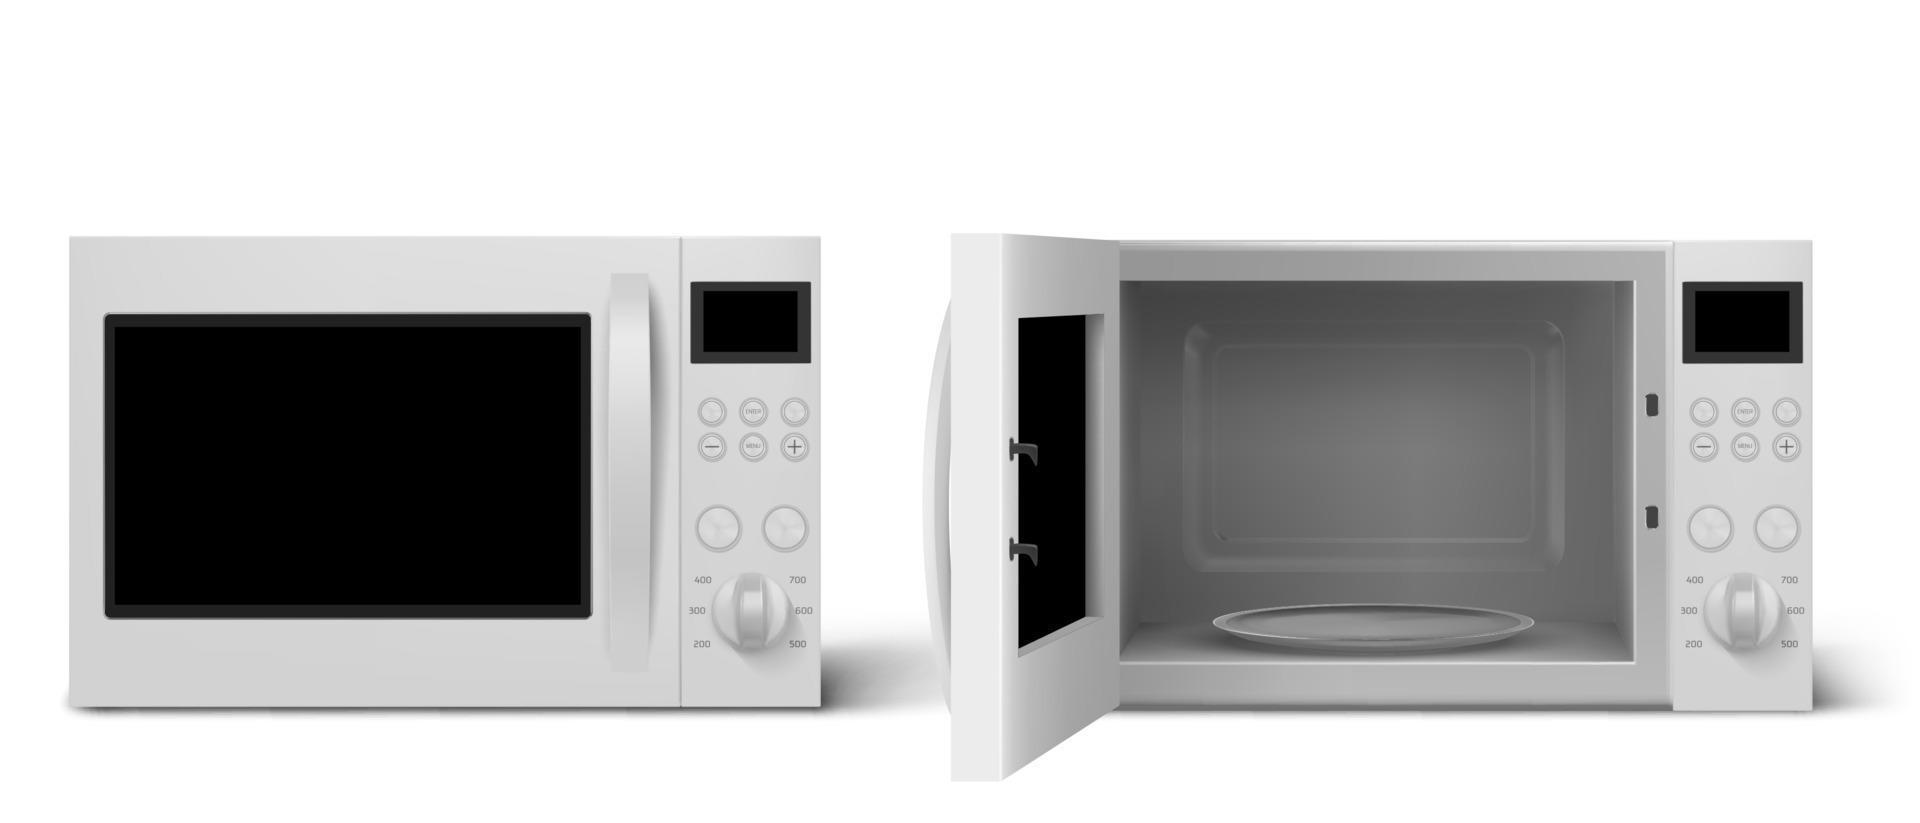 horno microondas moderno con puerta abierta y cerrada vector